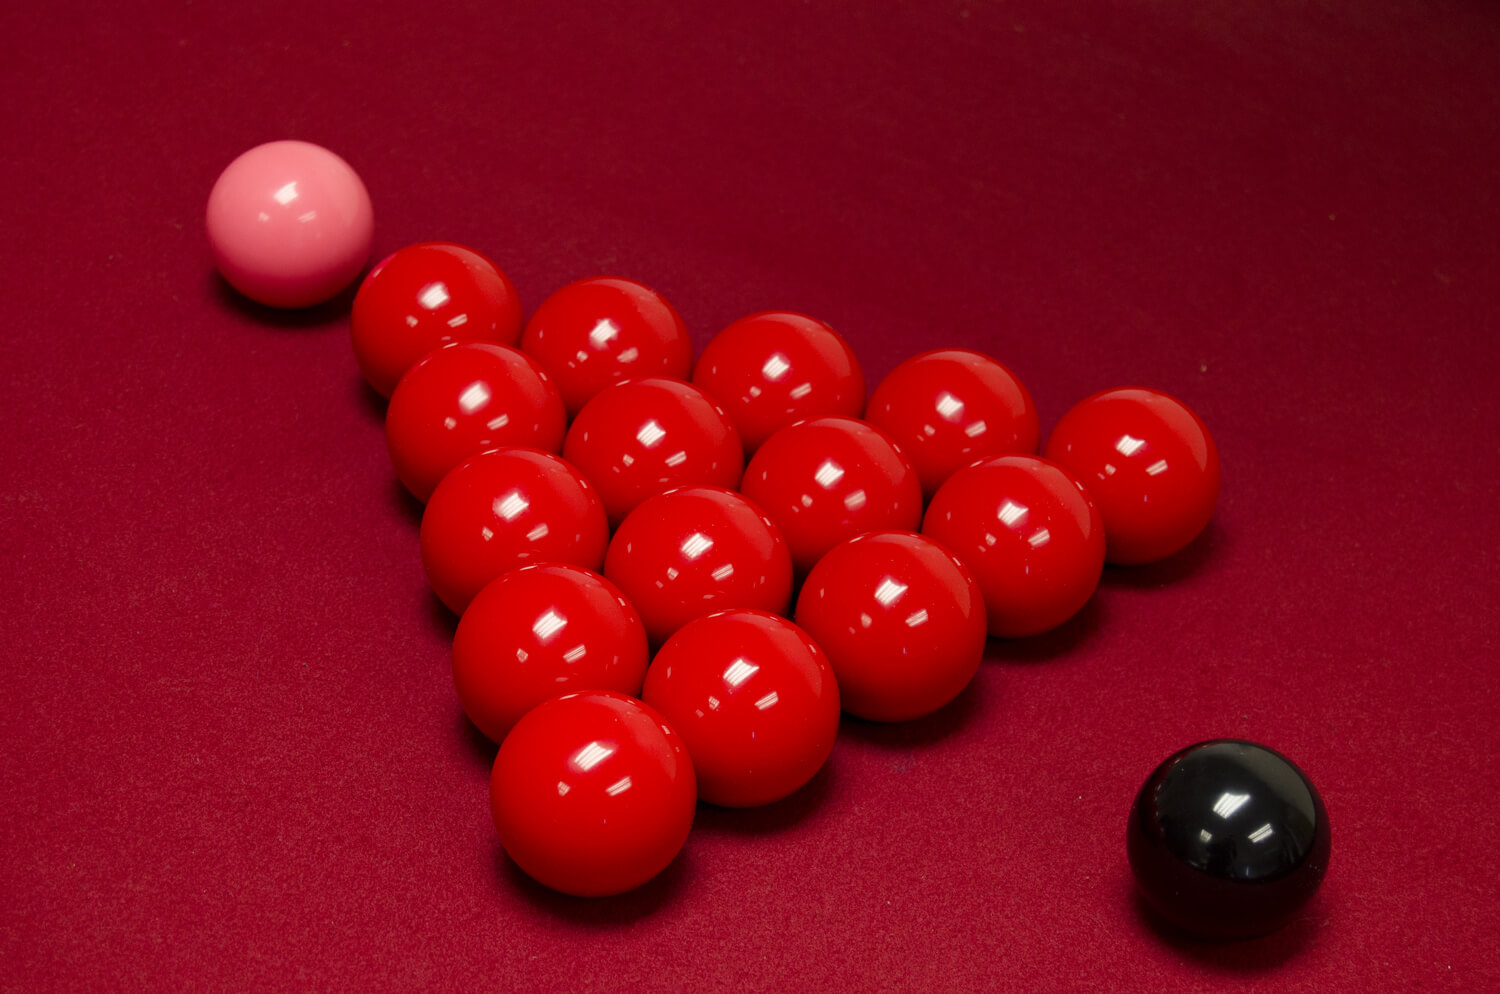 Pool balls set